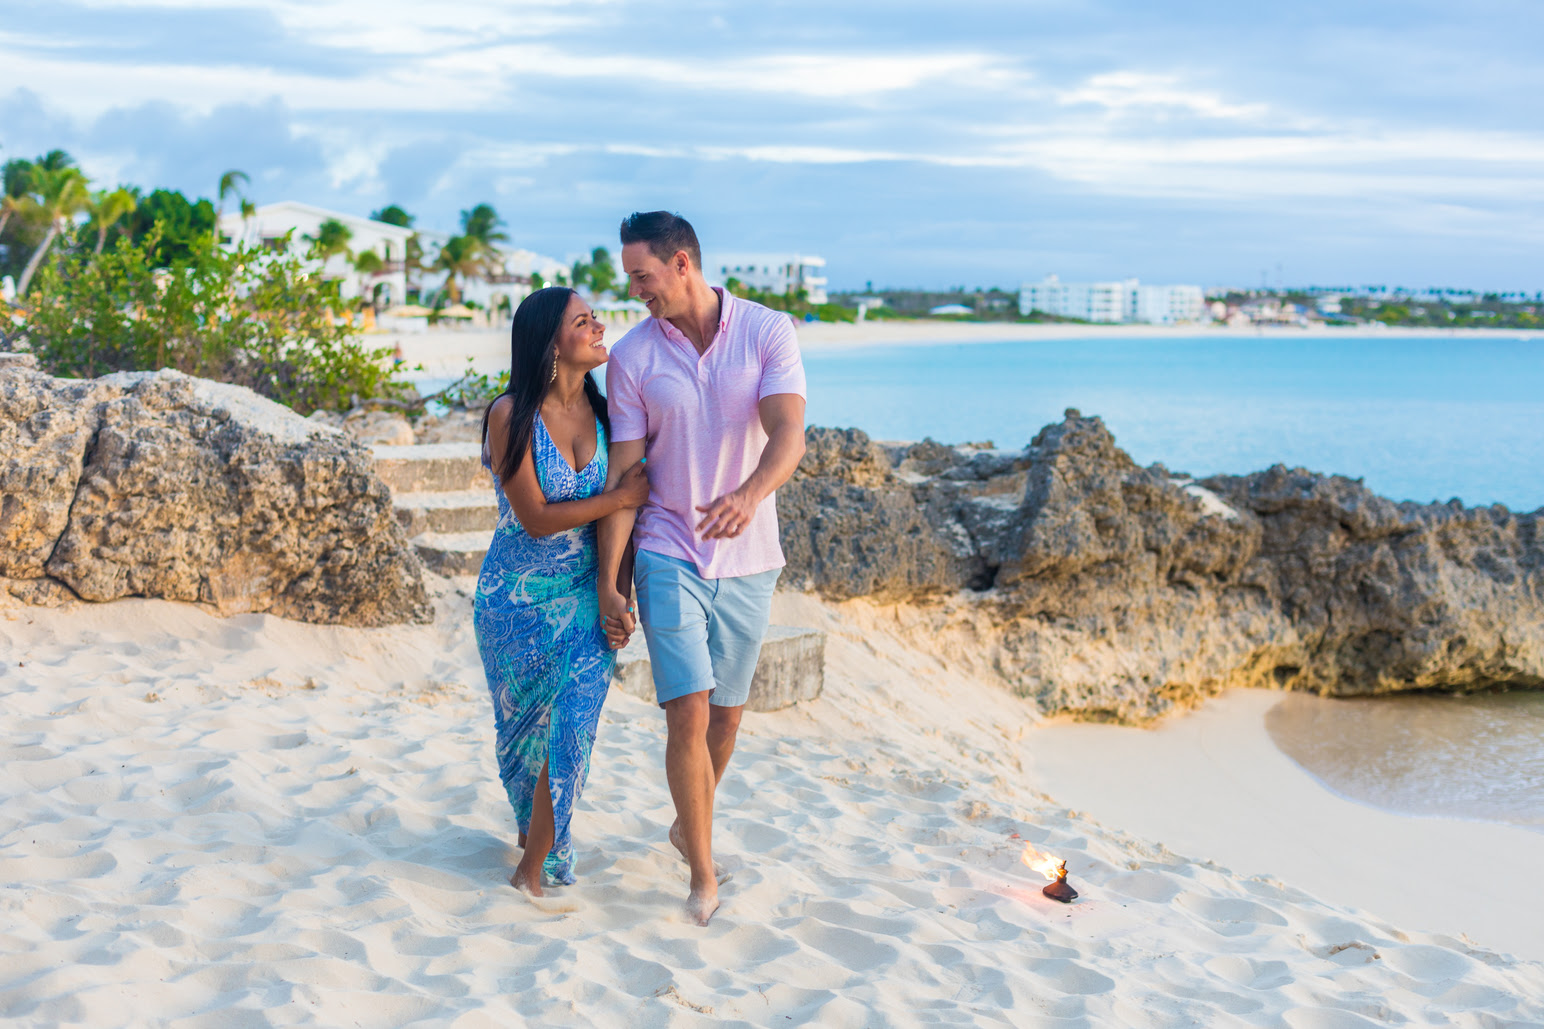 O cenário paradisíaco de Anguilla inspira romantismo aos viajantes que vão curtir um tempo a dois